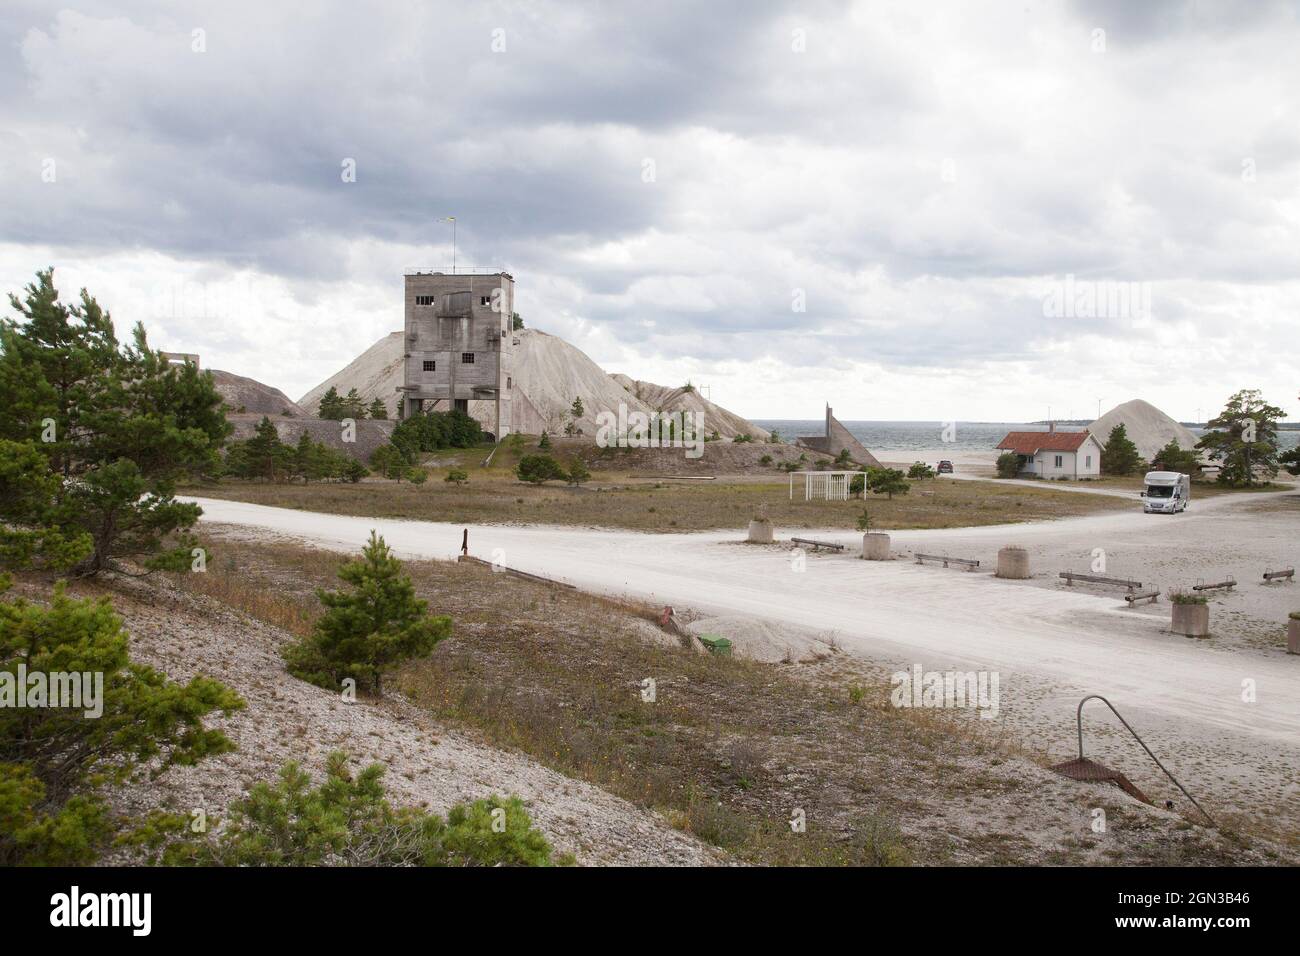 FURILLEN ist eine Insel nordöstlich von Gotland Schweden, die im 20. Jahrhundert eine Kalksteinindustrie gab, bis sie vom schwedischen Militär für die Öffentlichkeit gesperrt wurde.heute ist sie als Naturschutzgebiet und als Natura 2000-Gebiet geöffnet Stockfoto